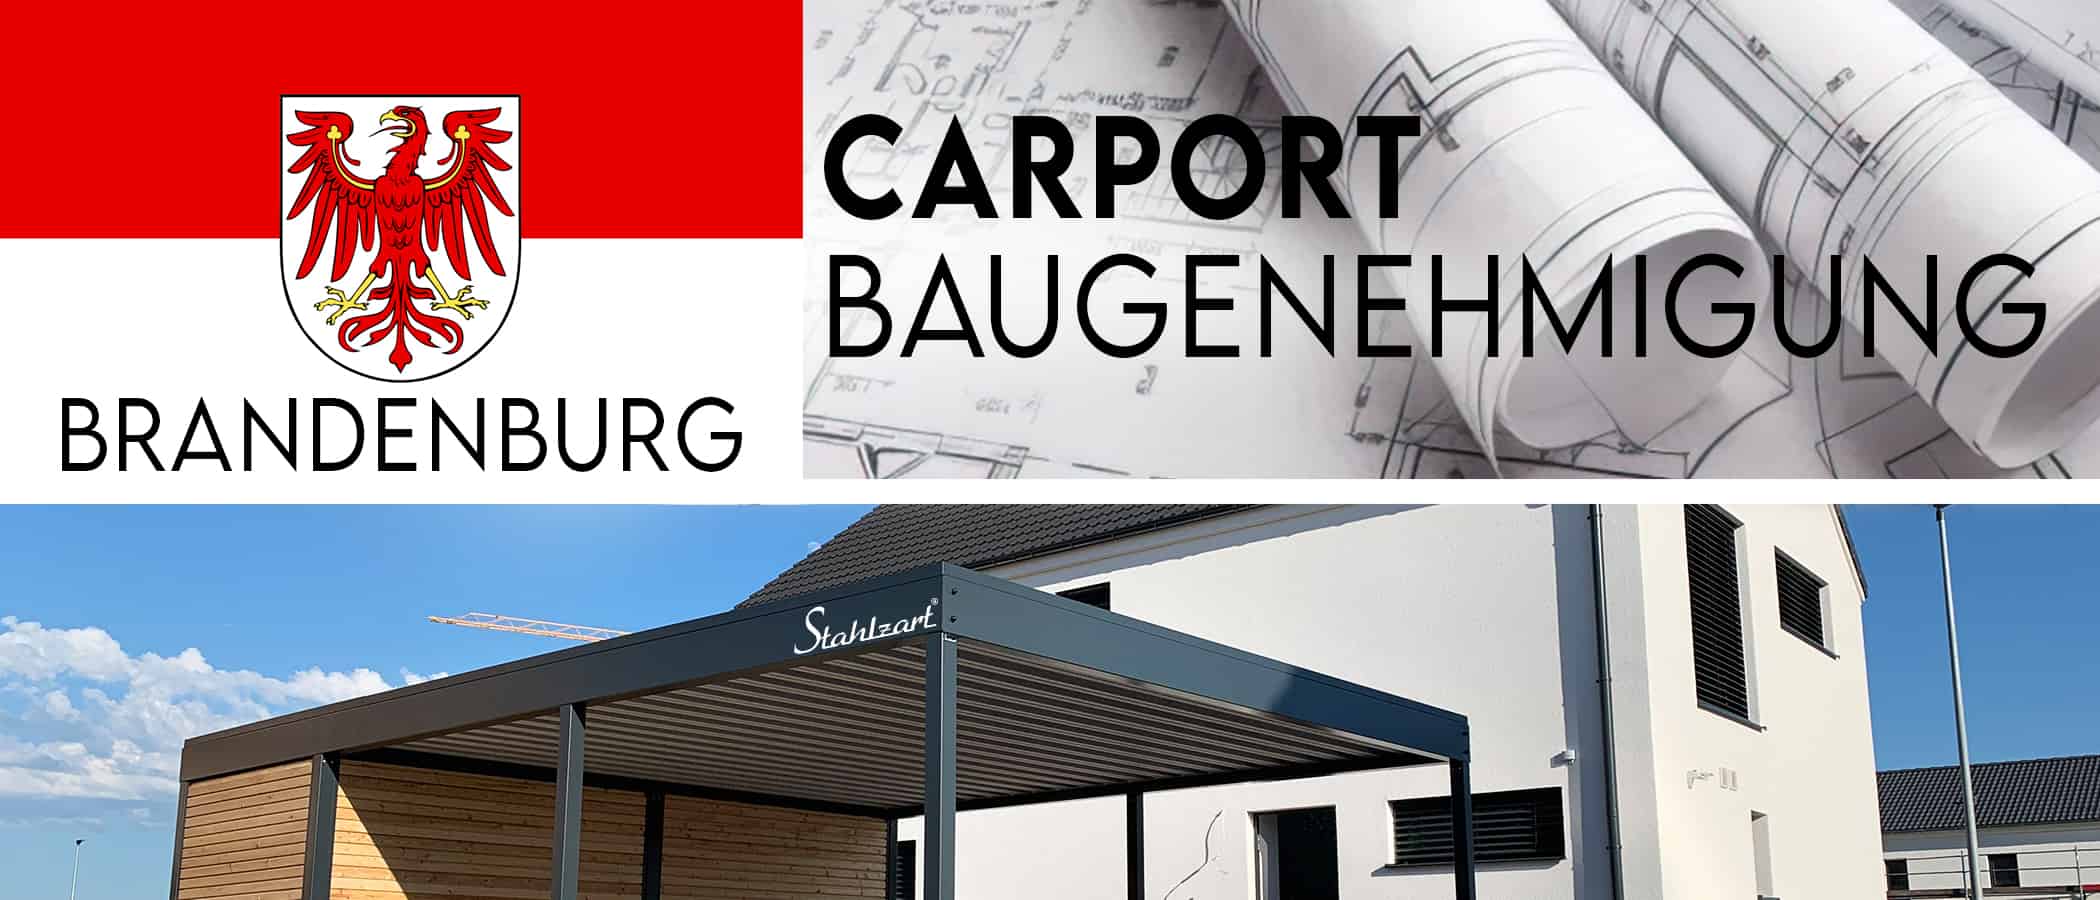 carport-baugenehmigungen-brandenburg-carports-bau-eines-carports-mittleren-wandhoehe-haus-garage-bau-ort-brutto-grundflaeche-bauvorhabens-vorschriften-stahlzart